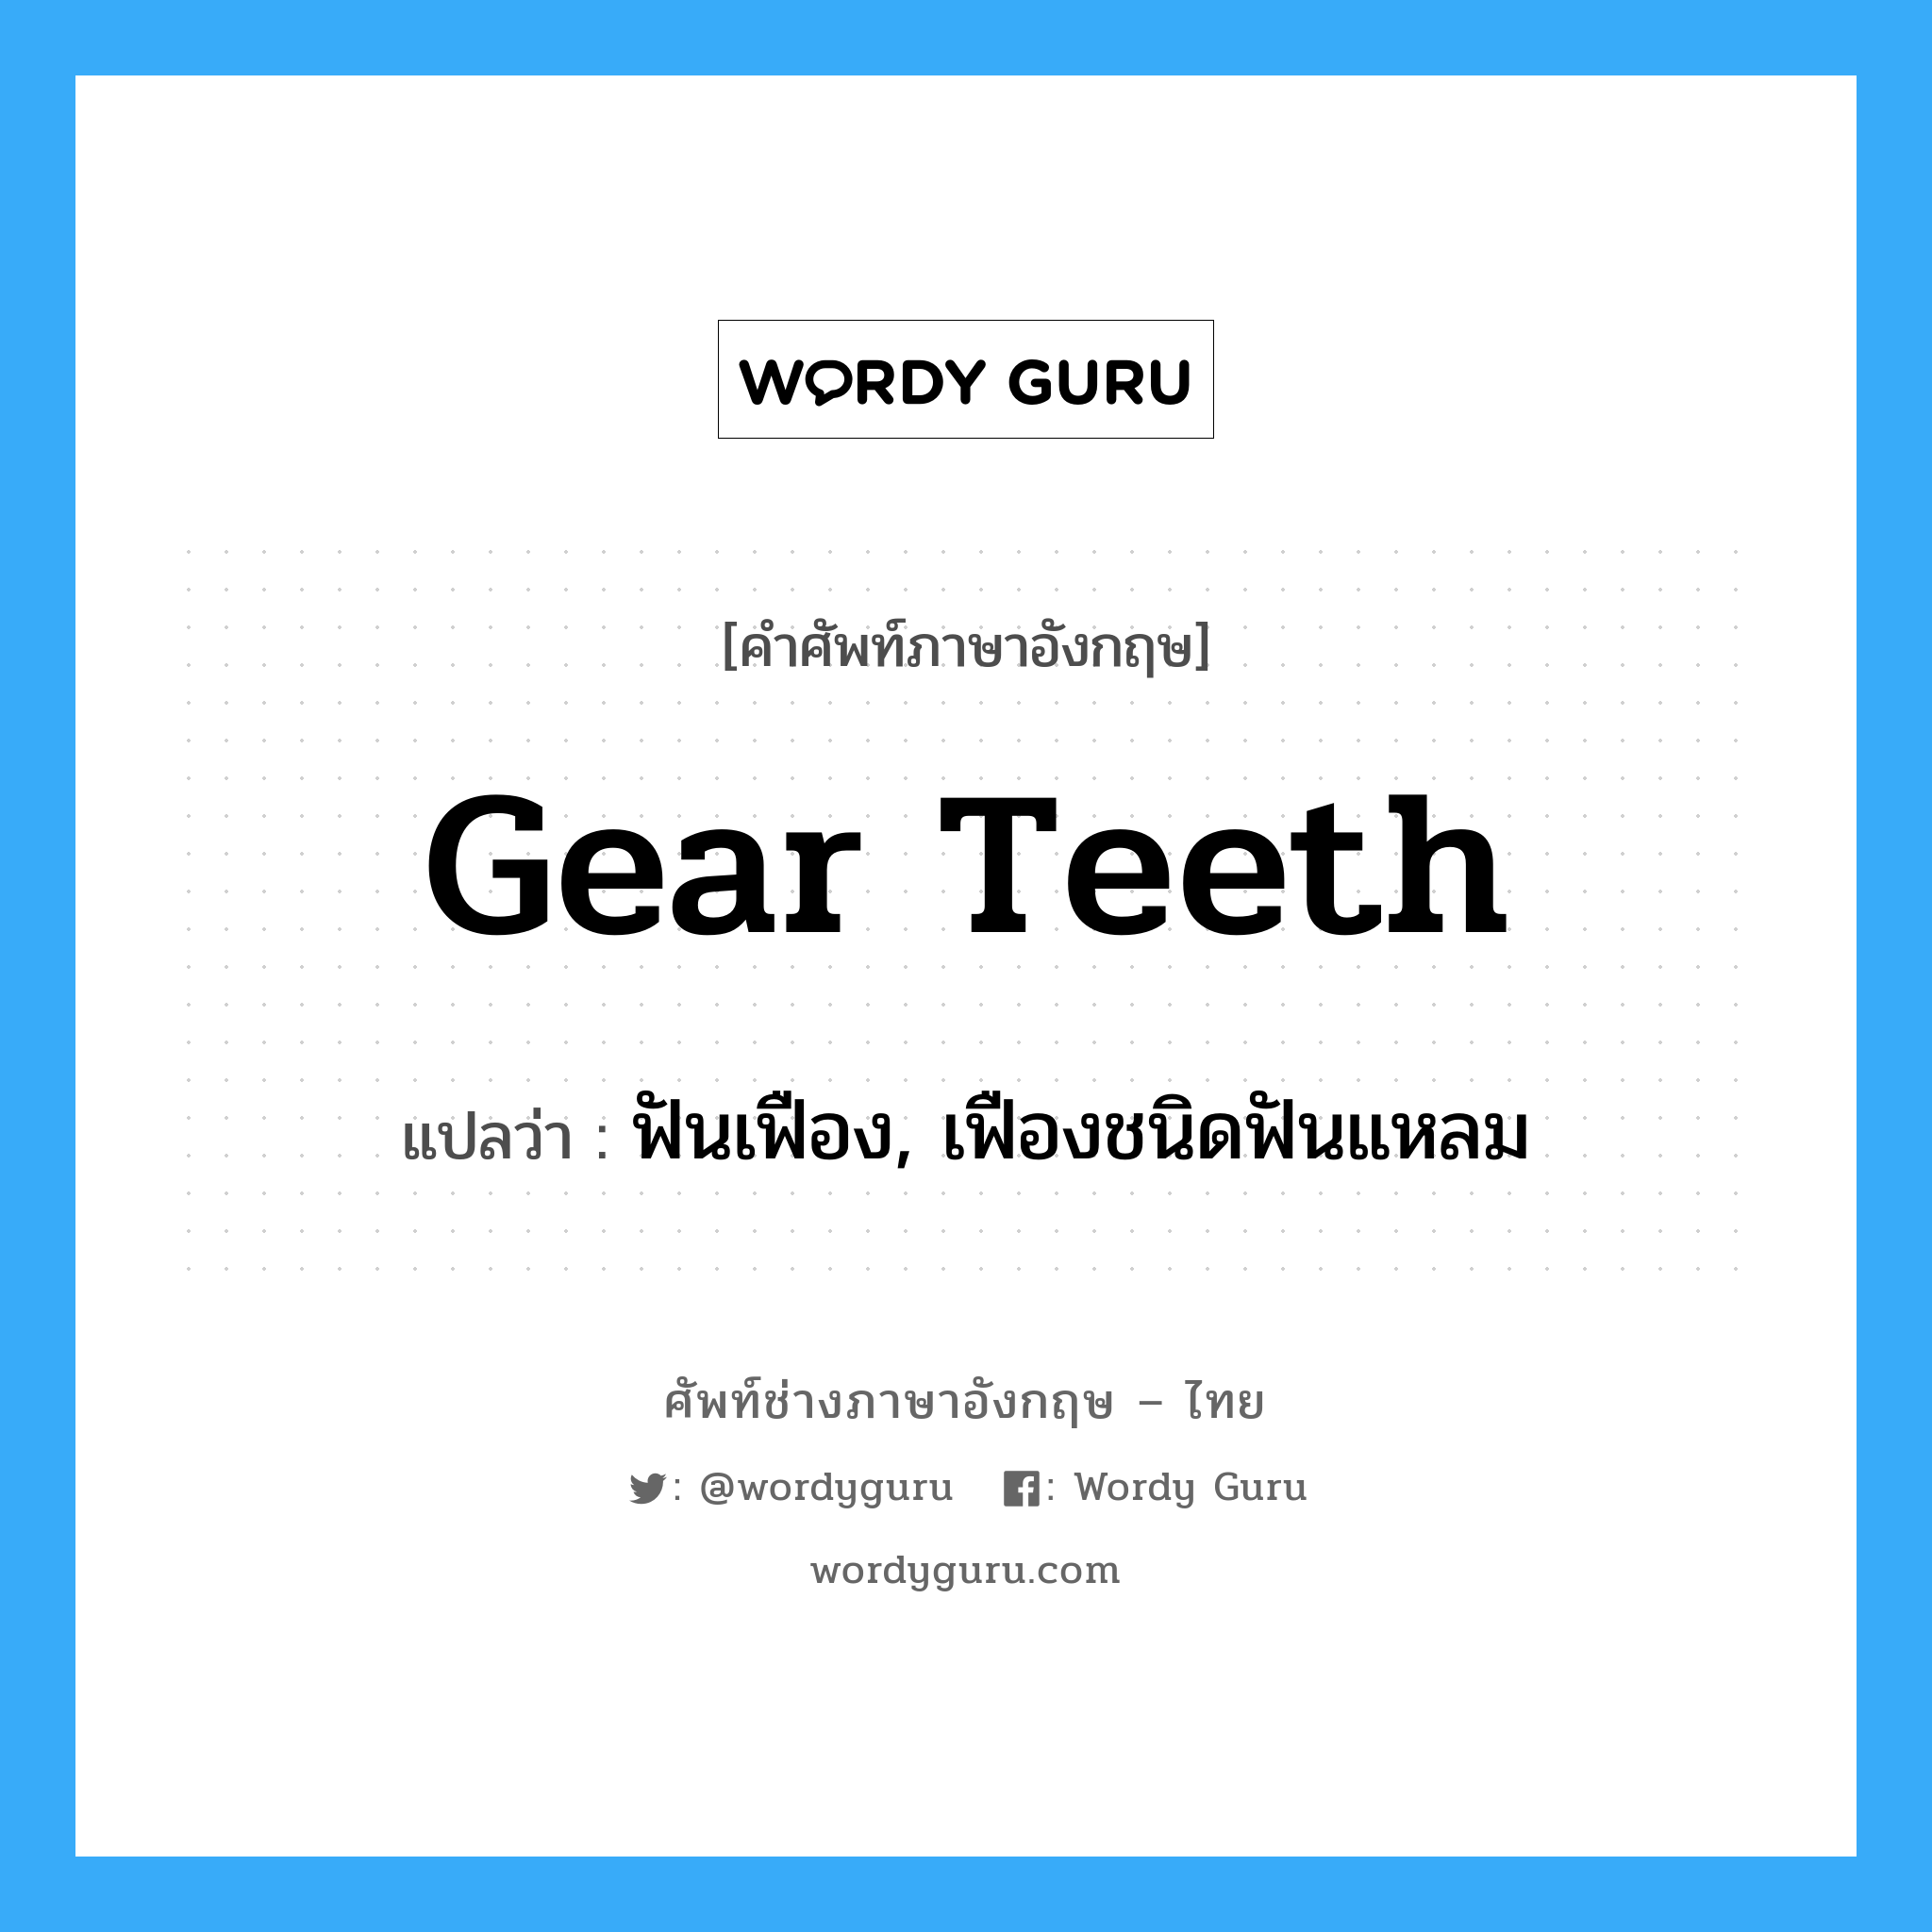 ฟันเฟือง, เฟืองชนิดฟันแหลม ภาษาอังกฤษ?, คำศัพท์ช่างภาษาอังกฤษ - ไทย ฟันเฟือง, เฟืองชนิดฟันแหลม คำศัพท์ภาษาอังกฤษ ฟันเฟือง, เฟืองชนิดฟันแหลม แปลว่า gear teeth